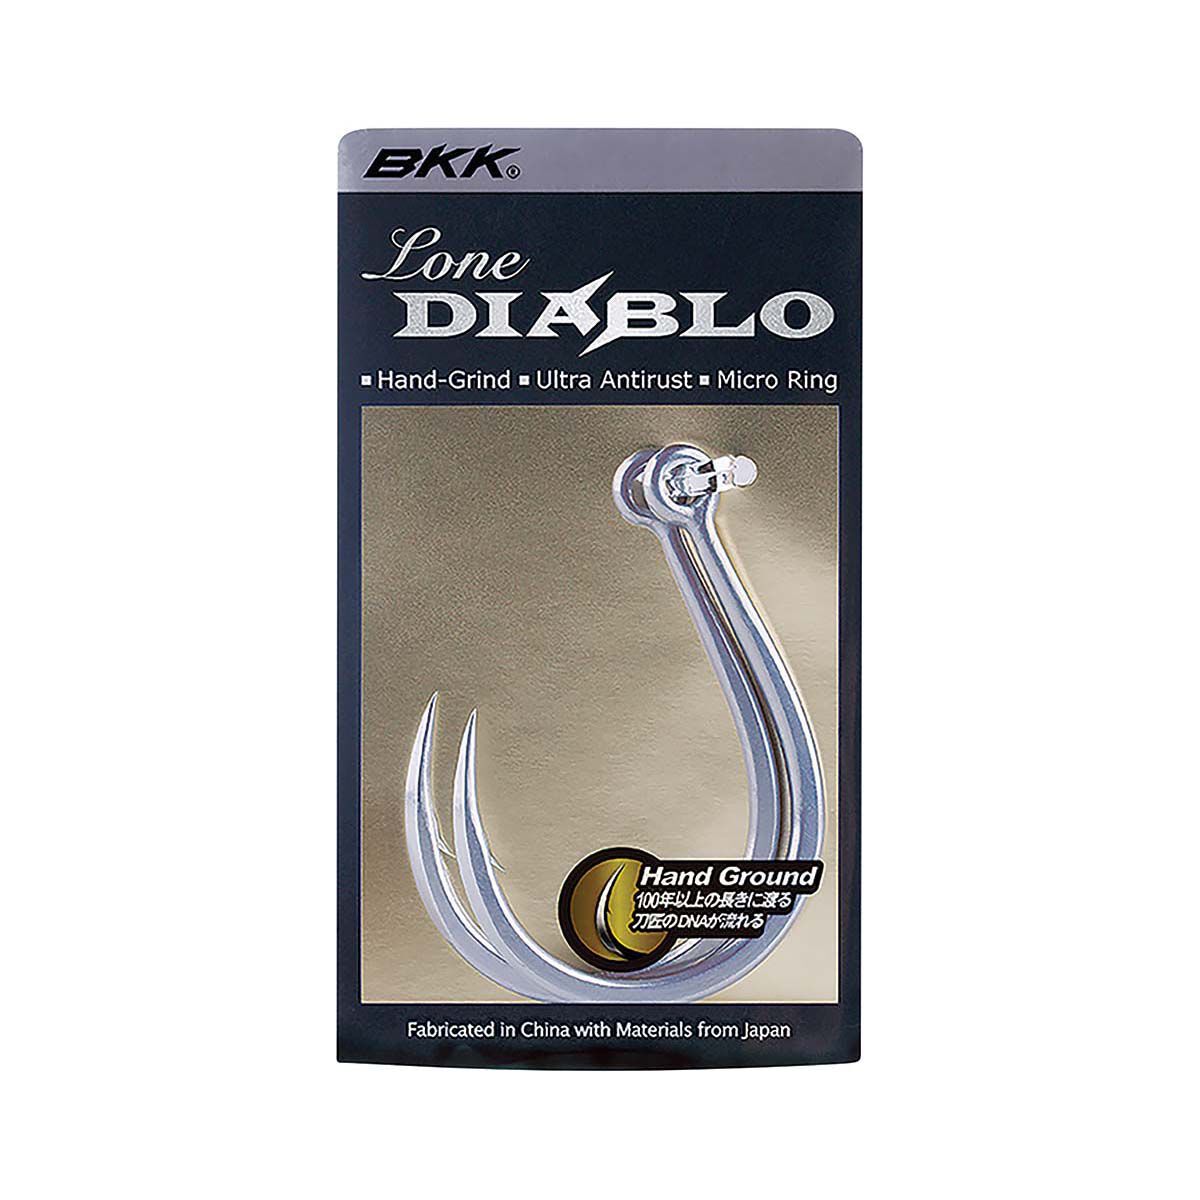 BKK Lone Diablo Inline Single Hook